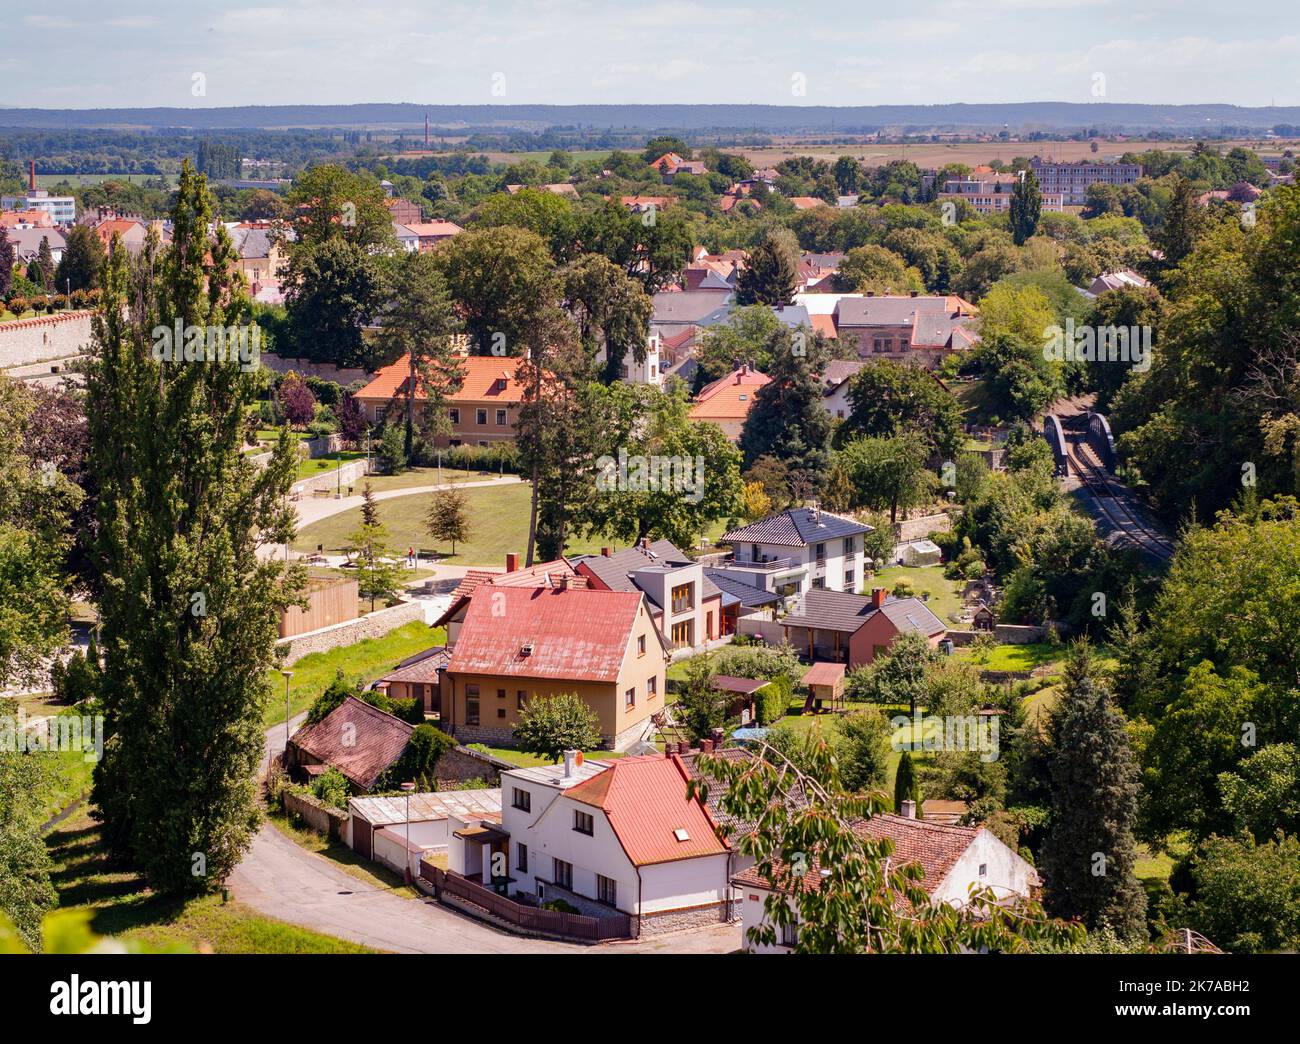 Sehen Sie die umliegende Stadt Kutná Hora.die mittelböhmische Region der Tschechischen Republik ist ein UNESCO-Weltkulturerbe mit mittelalterlicher Architektur. Stockfoto